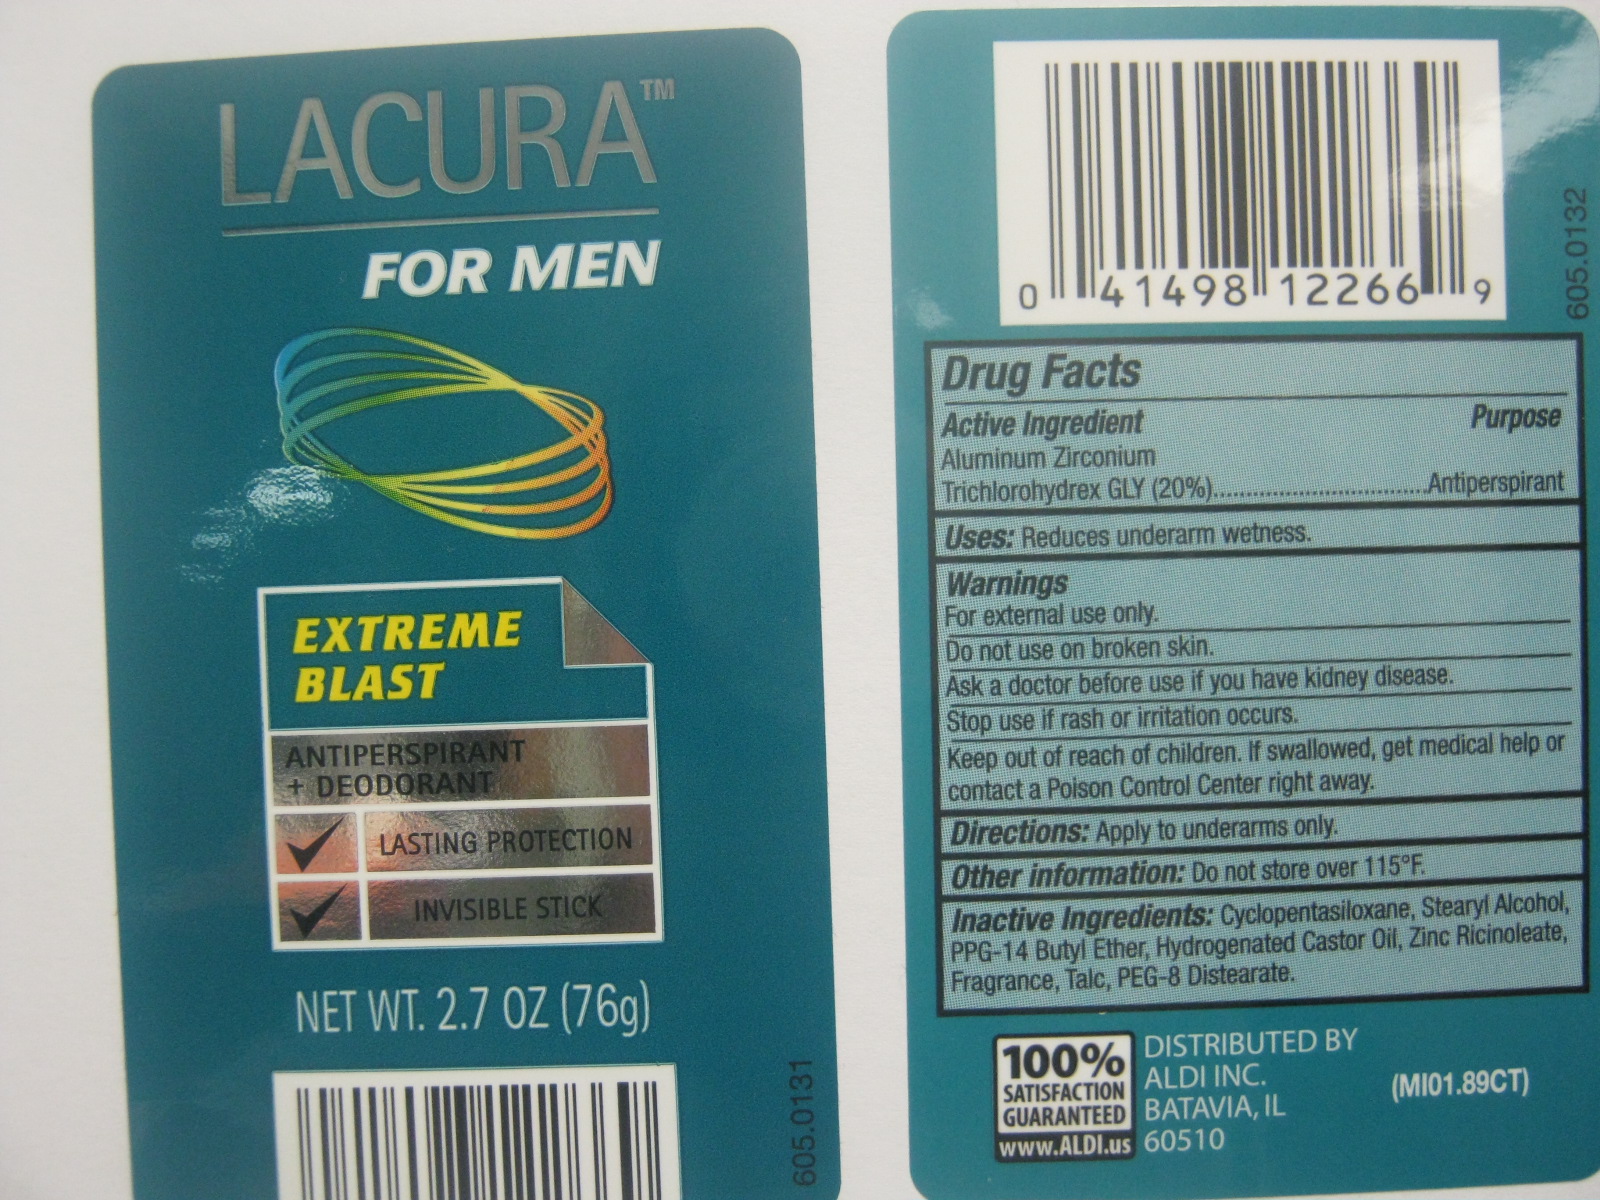 LacuraExtremeBlast Label